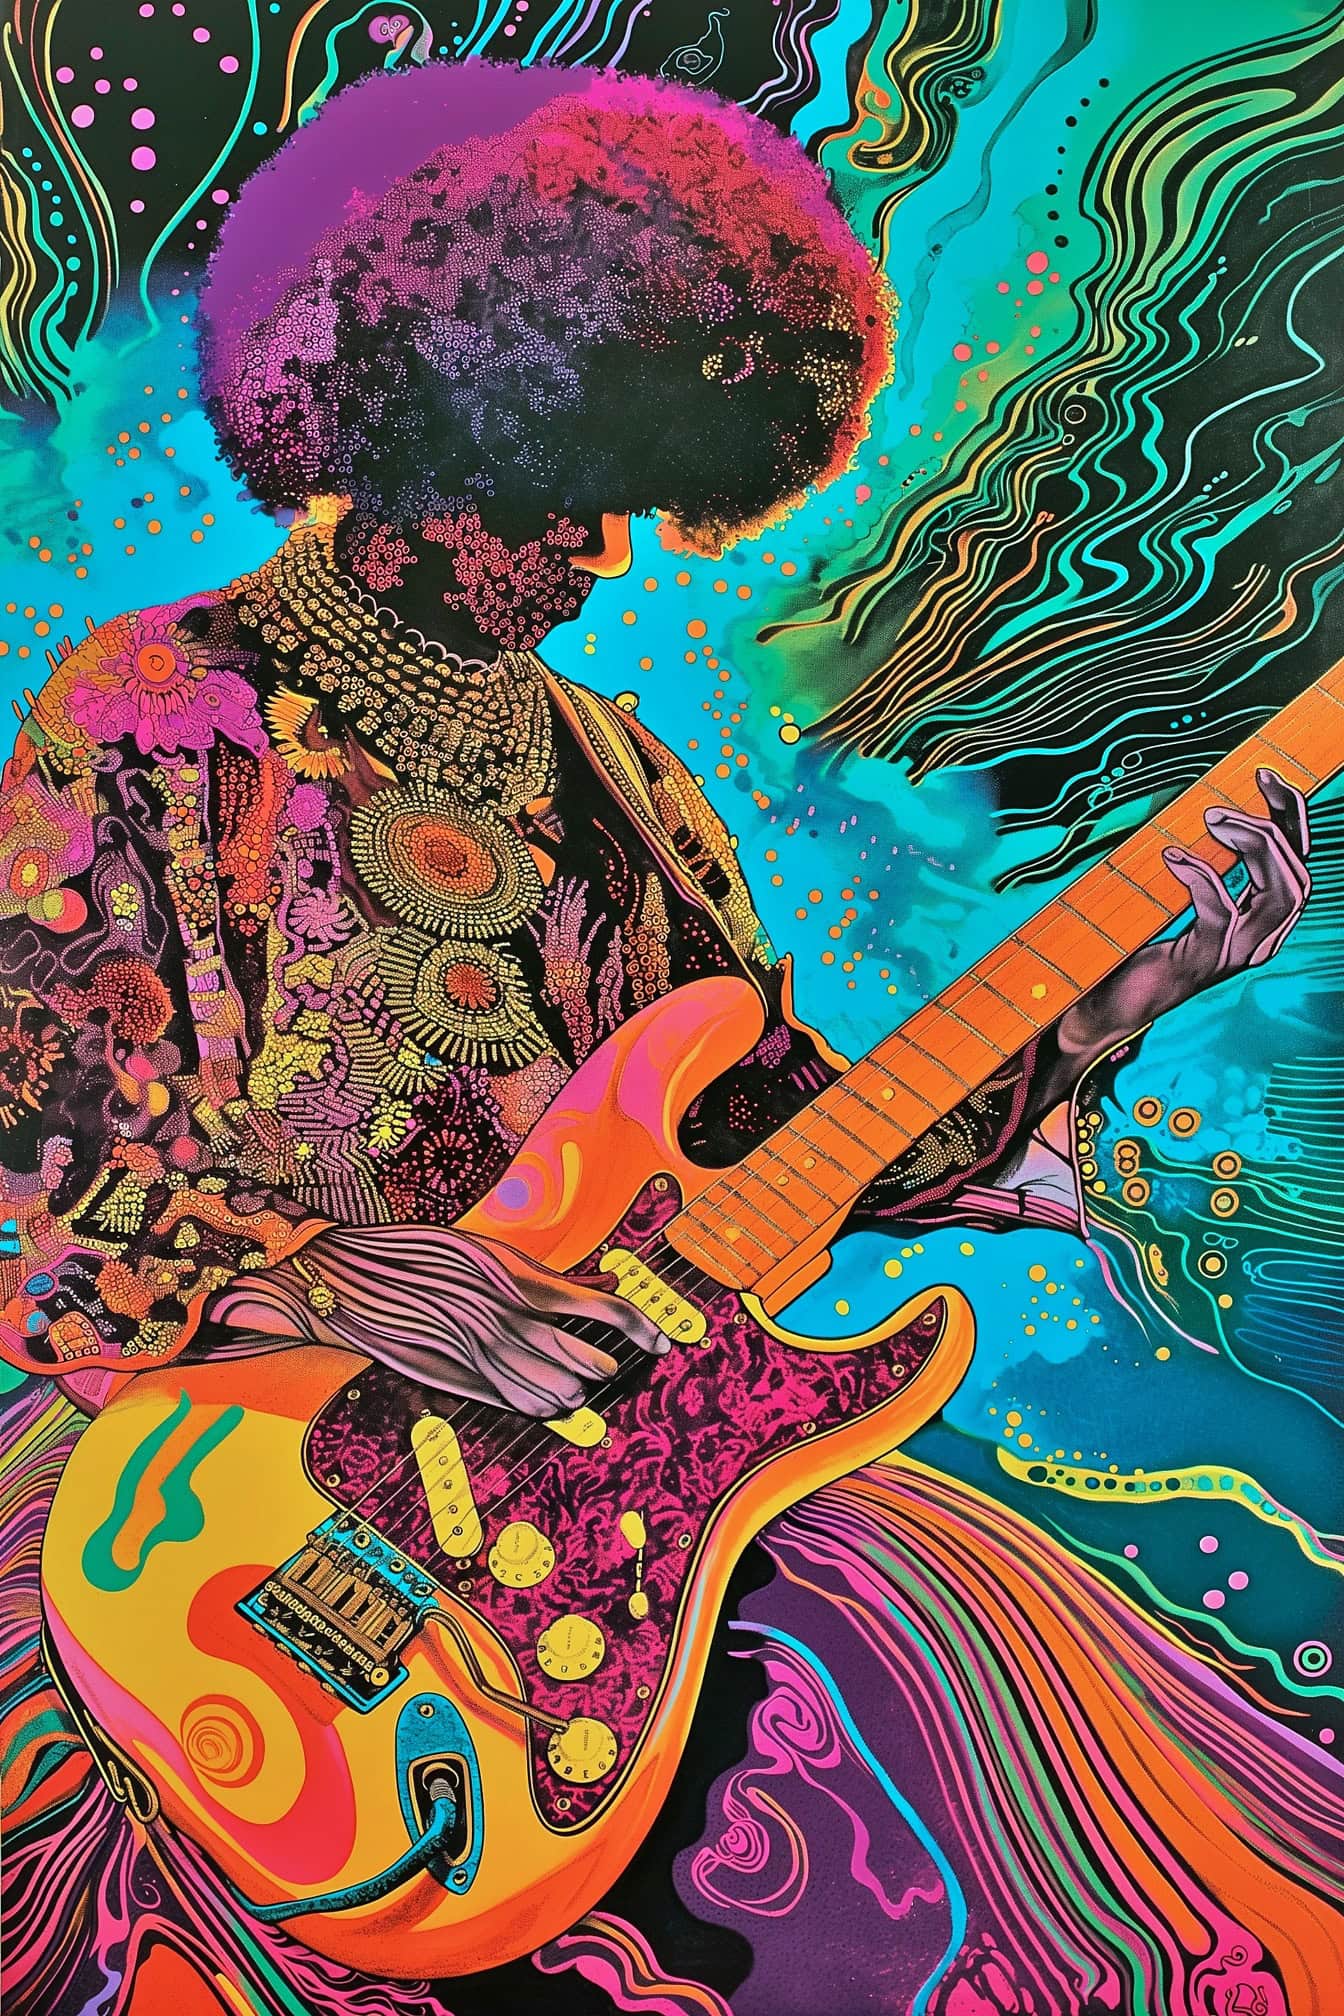 En hypnotisk illustrasjon av Jimi Hendrix som spiller gitar i en blanding av psykedelisk og pop art stil